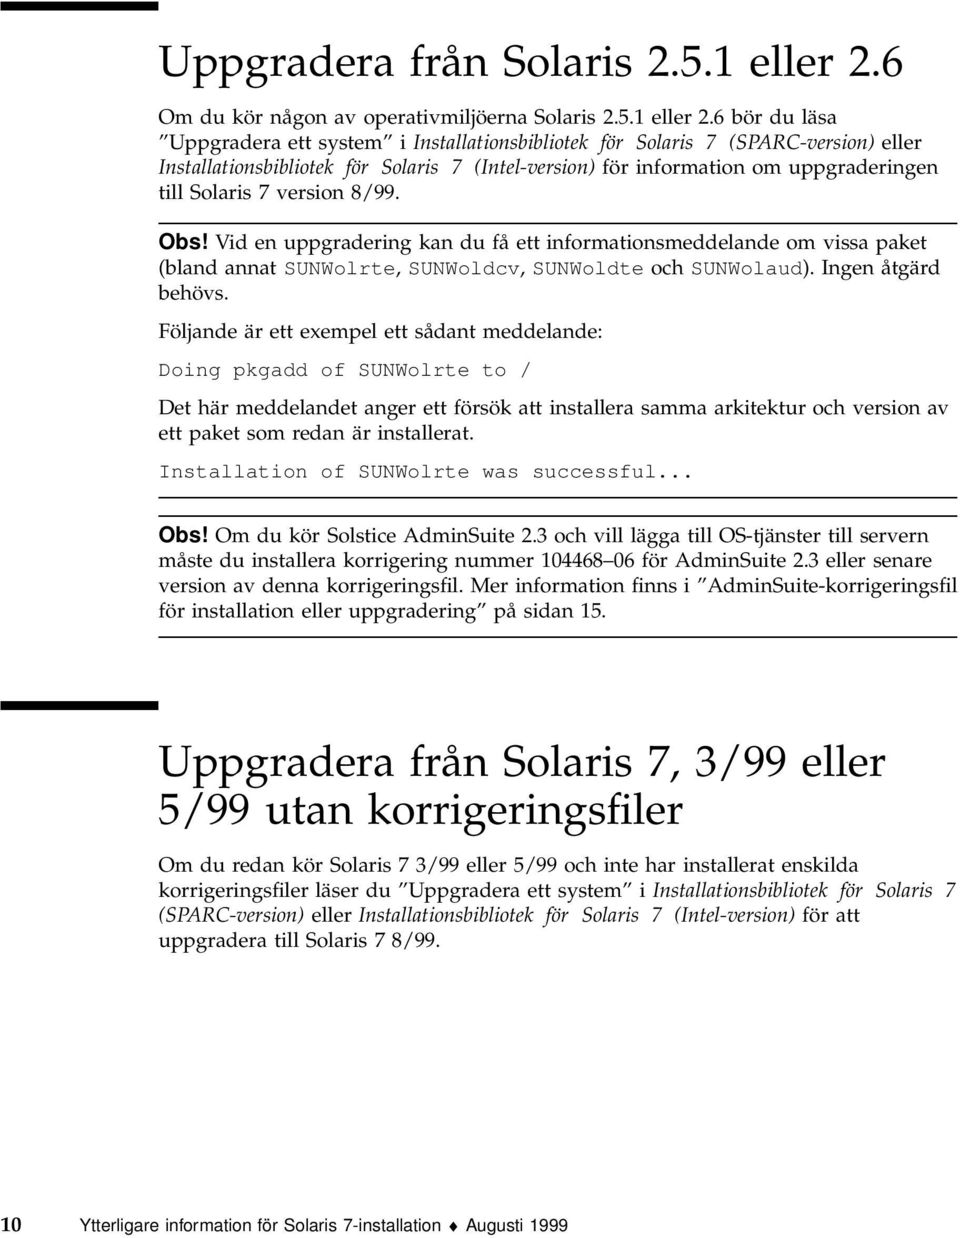 6 bör du läsa Uppgradera ett system i Installationsbibliotek för Solaris 7 (SPARC-version) eller Installationsbibliotek för Solaris 7 (Intel-version) för information om uppgraderingen till Solaris 7